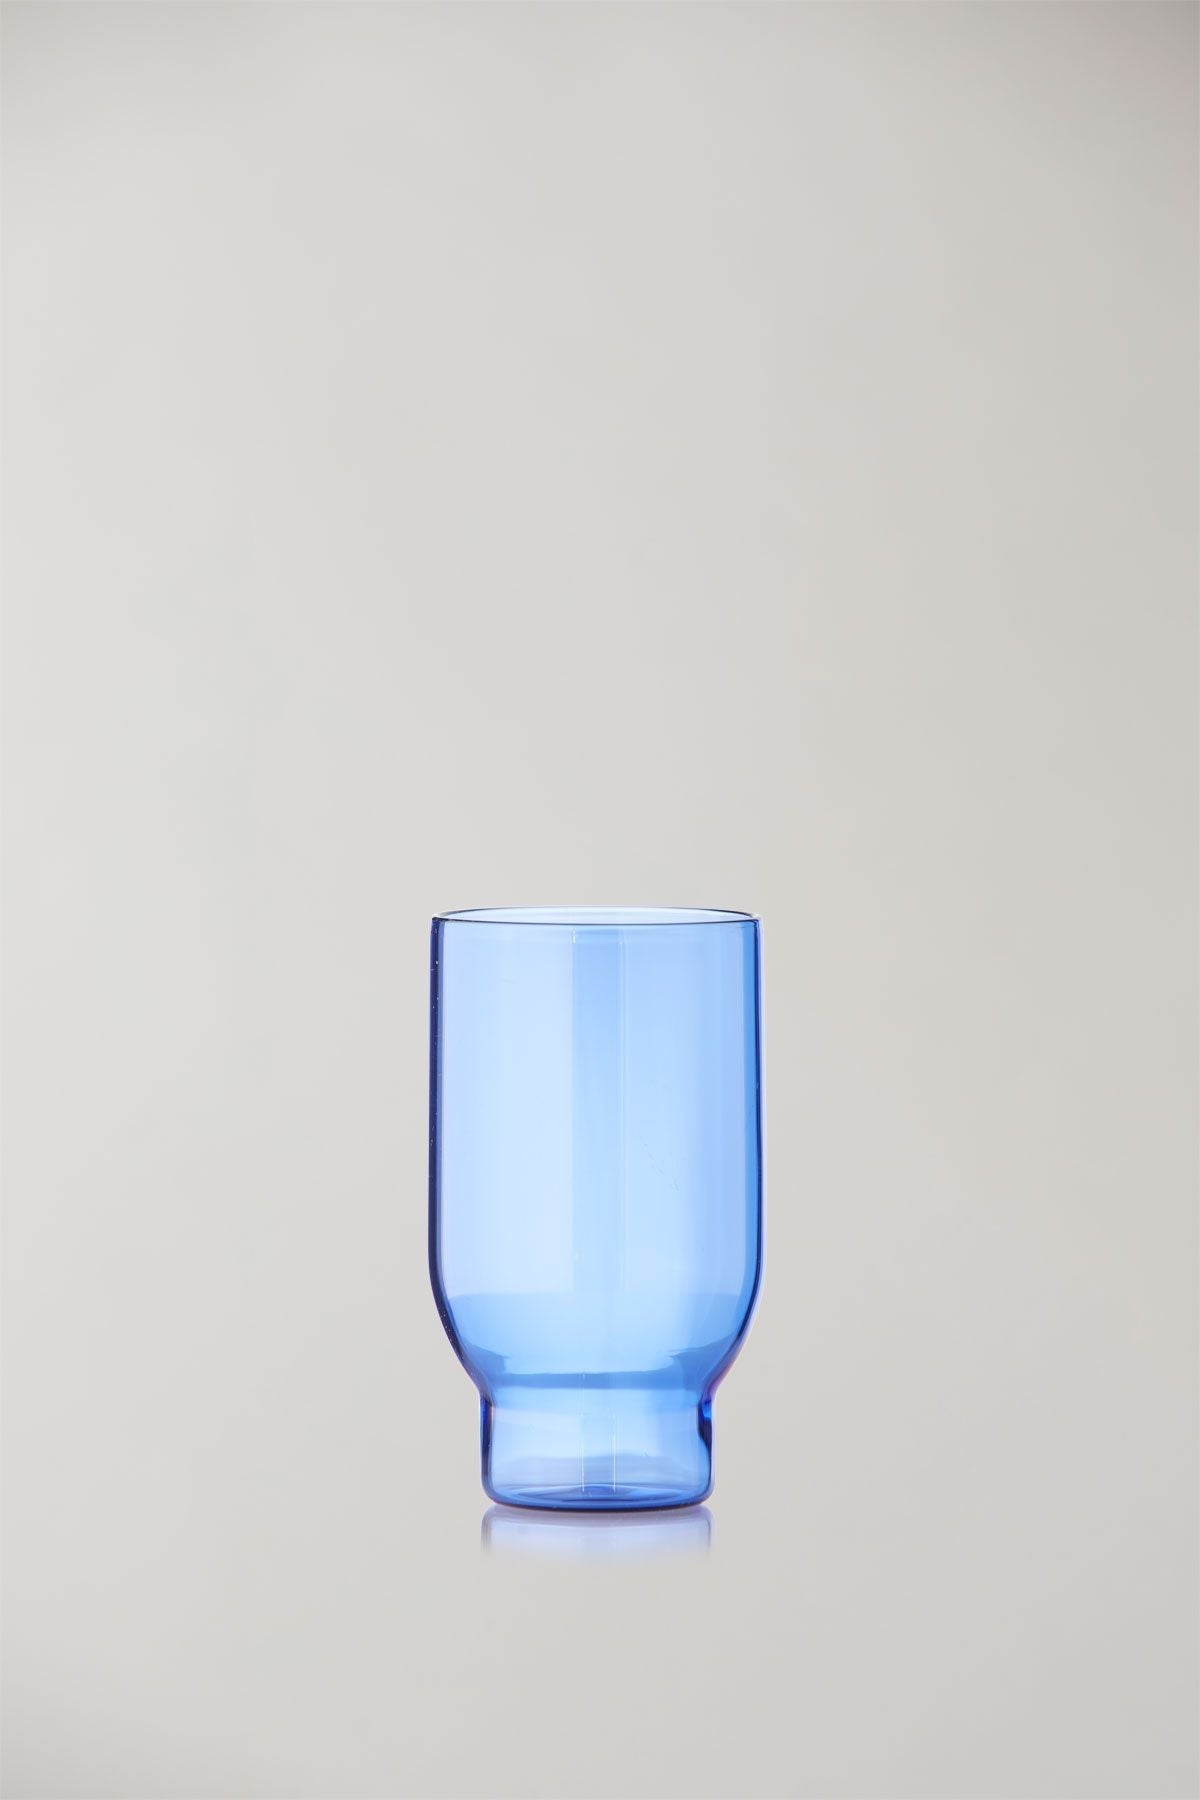 Estudio sobre el juego de cristalería de 2 vasos de agua, azul